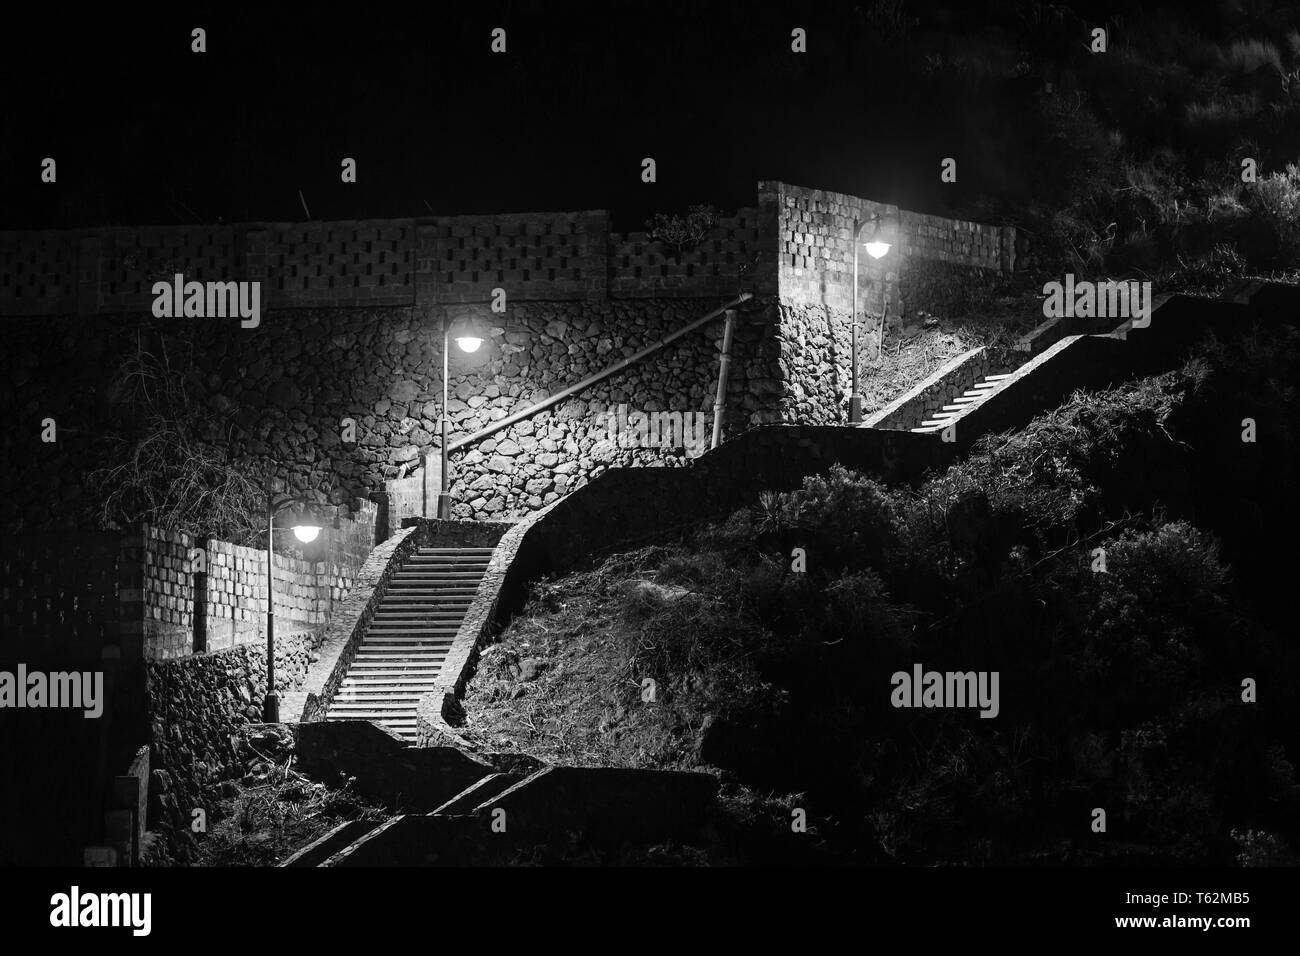 Un escalier éclairé à Los Cancajos, La Palma, Espagne. Noir et blanc voir la nuit, l'escalier mène de la plage sur une route. Banque D'Images